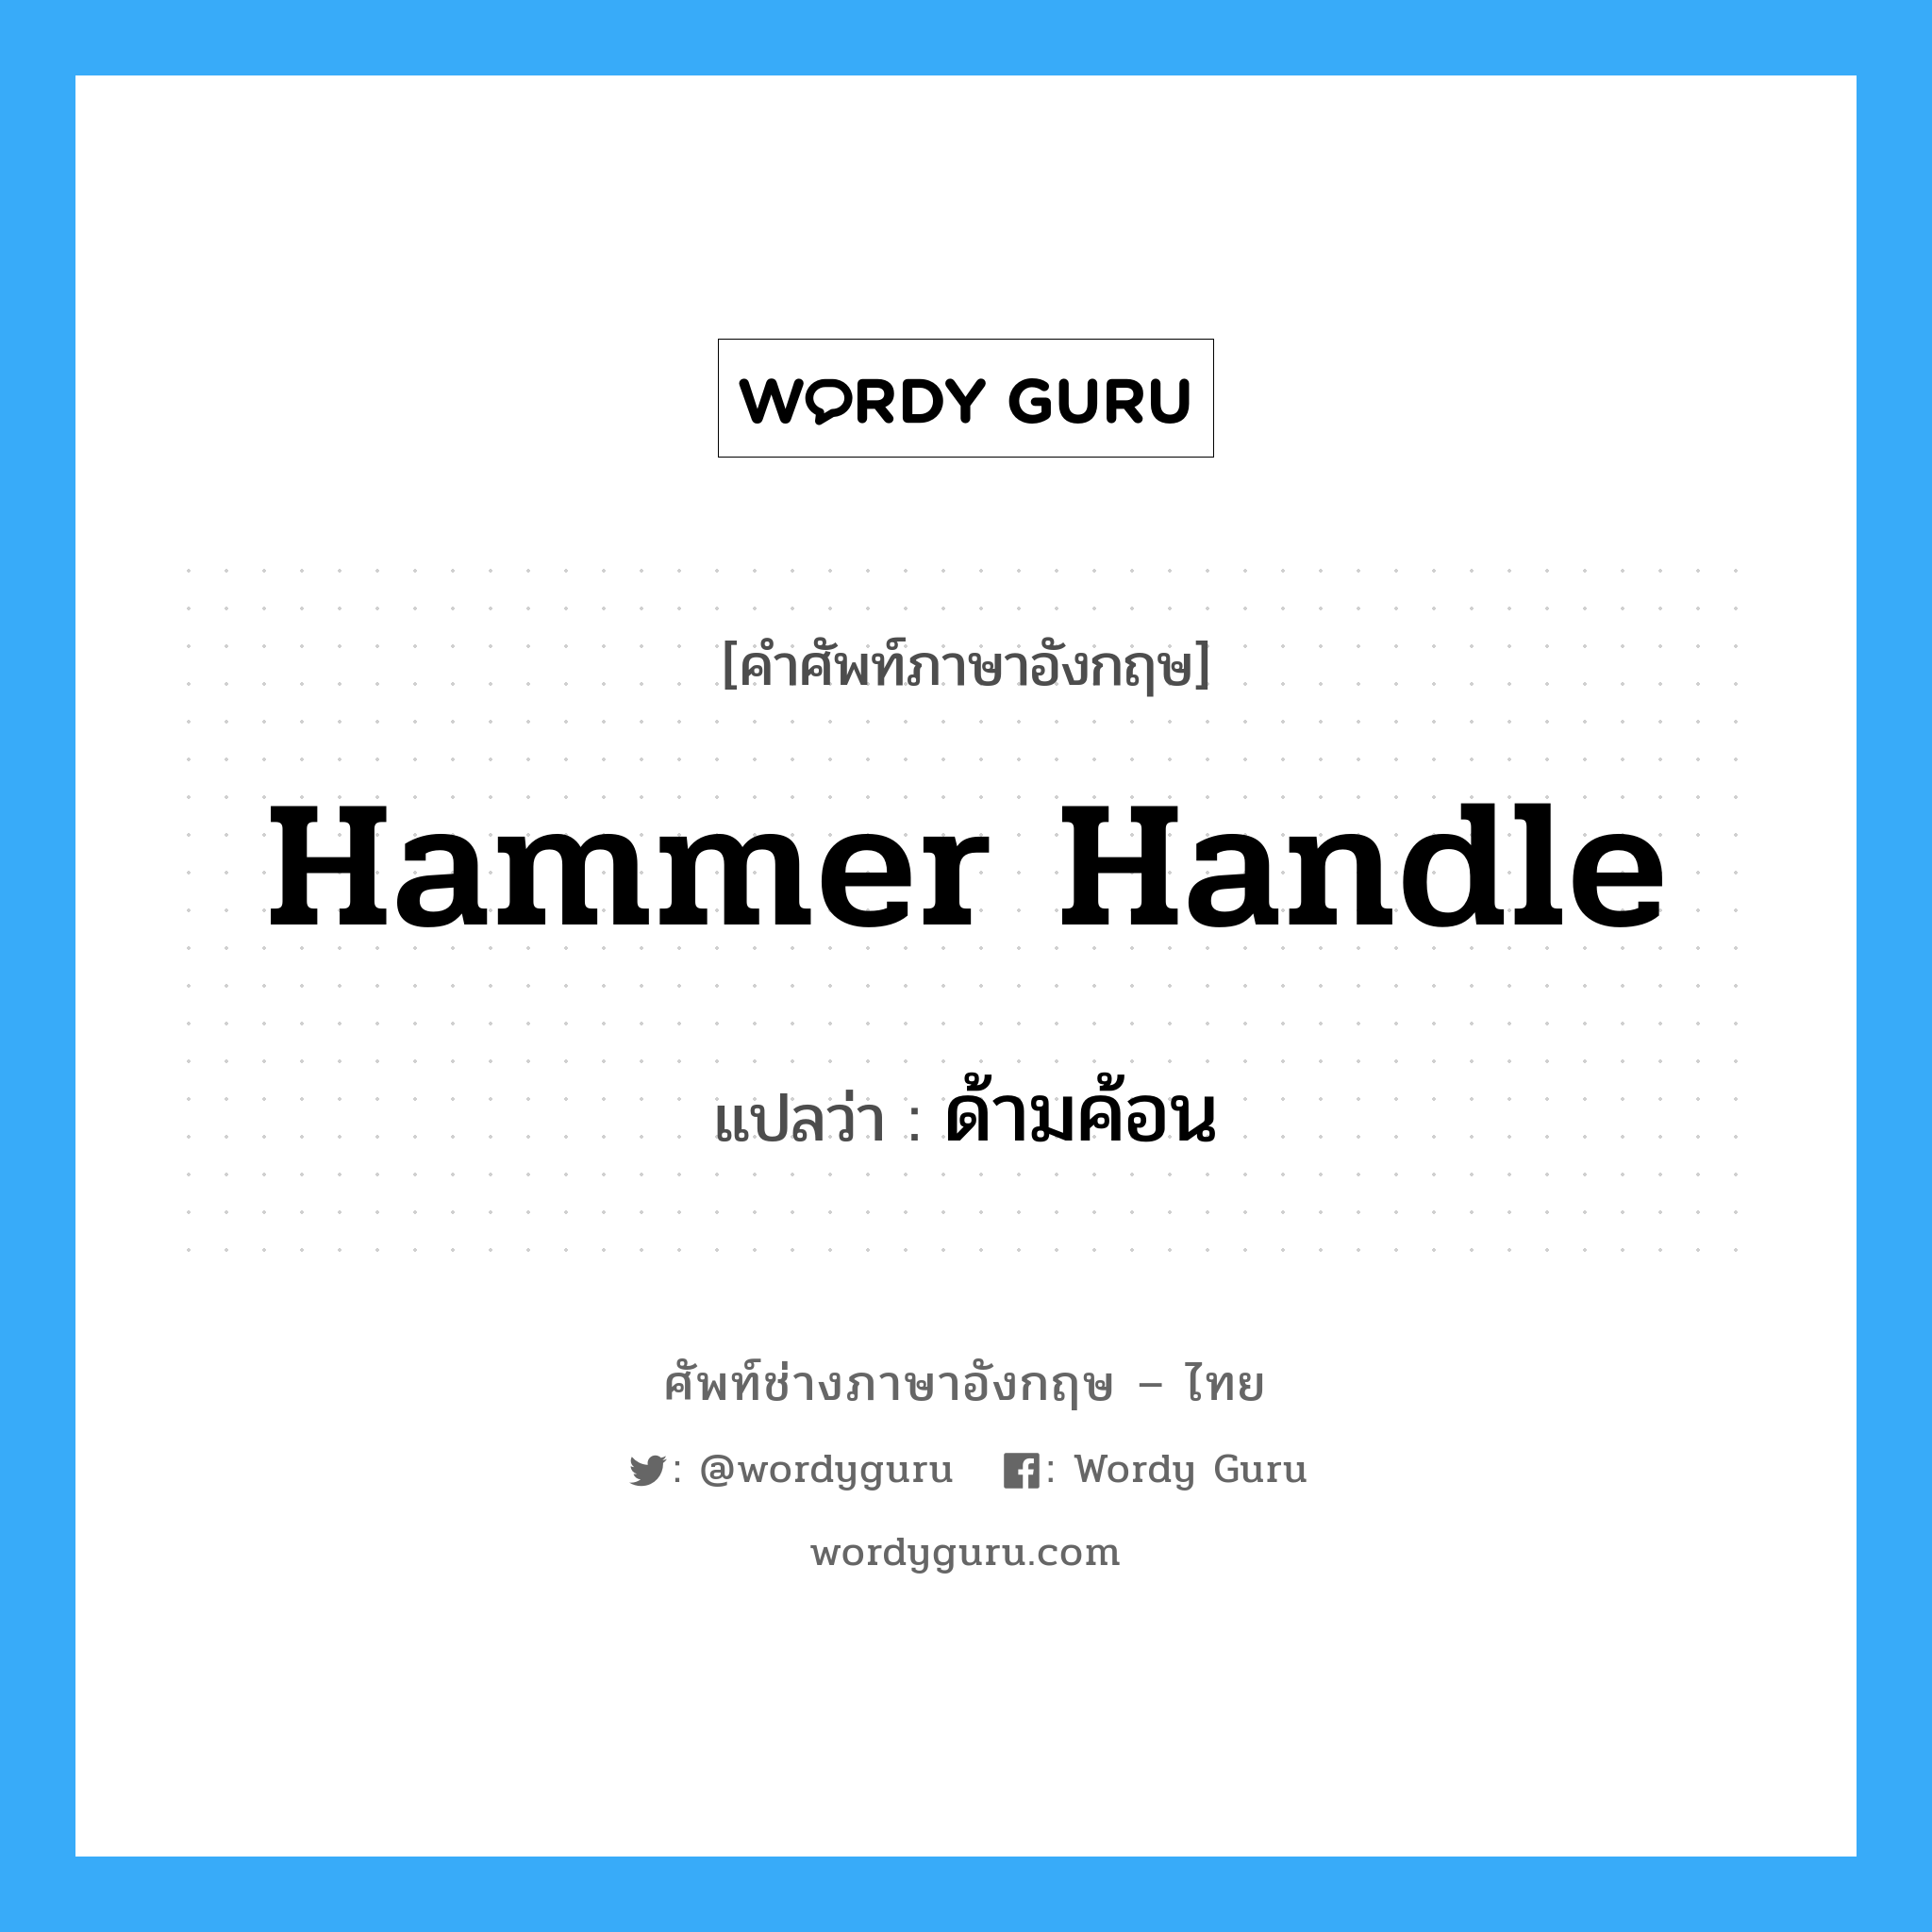 ด้ามค้อน ภาษาอังกฤษ?, คำศัพท์ช่างภาษาอังกฤษ - ไทย ด้ามค้อน คำศัพท์ภาษาอังกฤษ ด้ามค้อน แปลว่า hammer handle